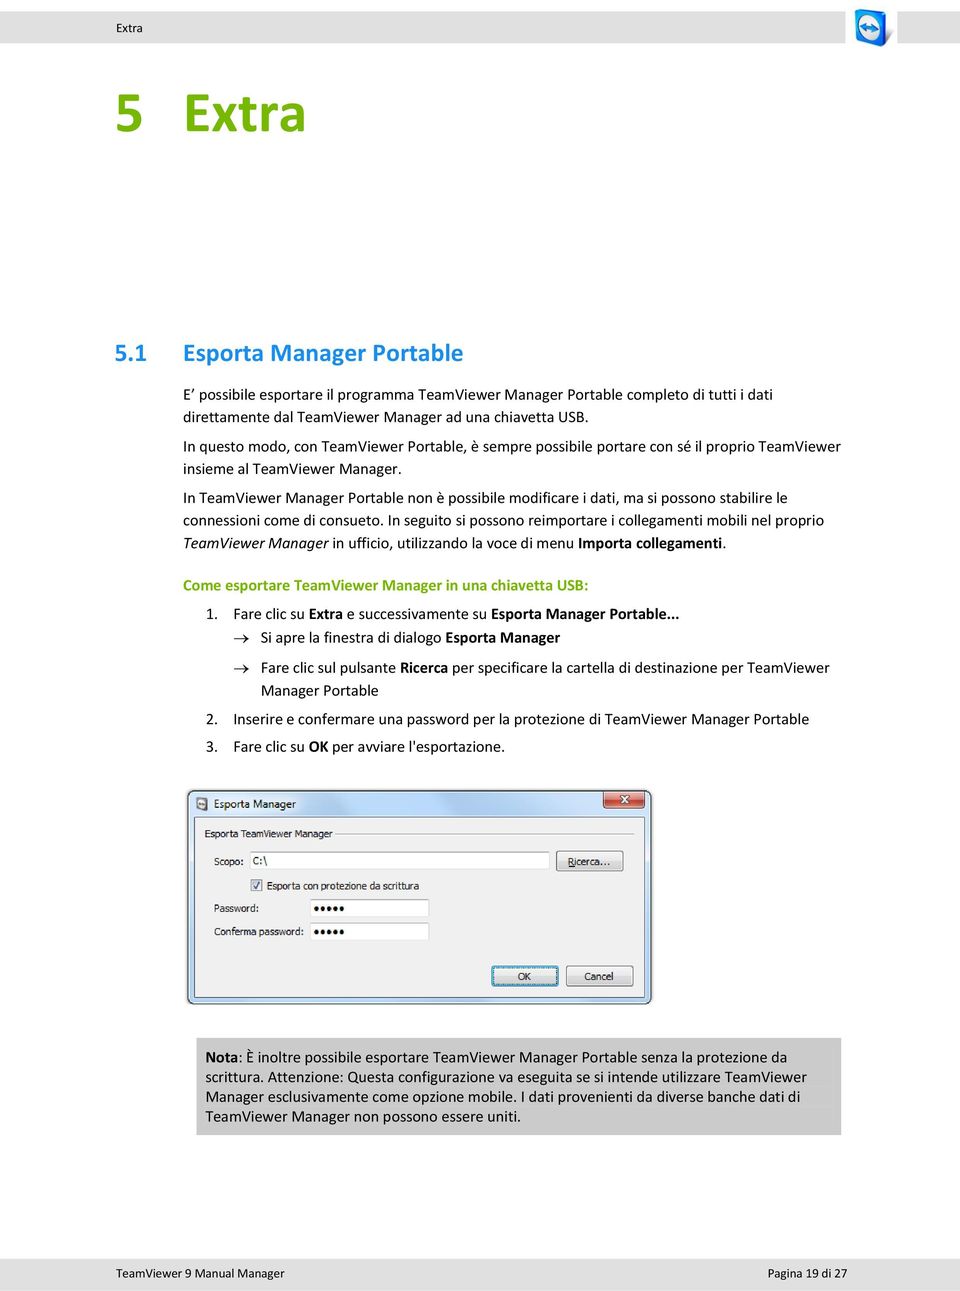 In TeamViewer Manager Portable non è possibile modificare i dati, ma si possono stabilire le connessioni come di consueto.